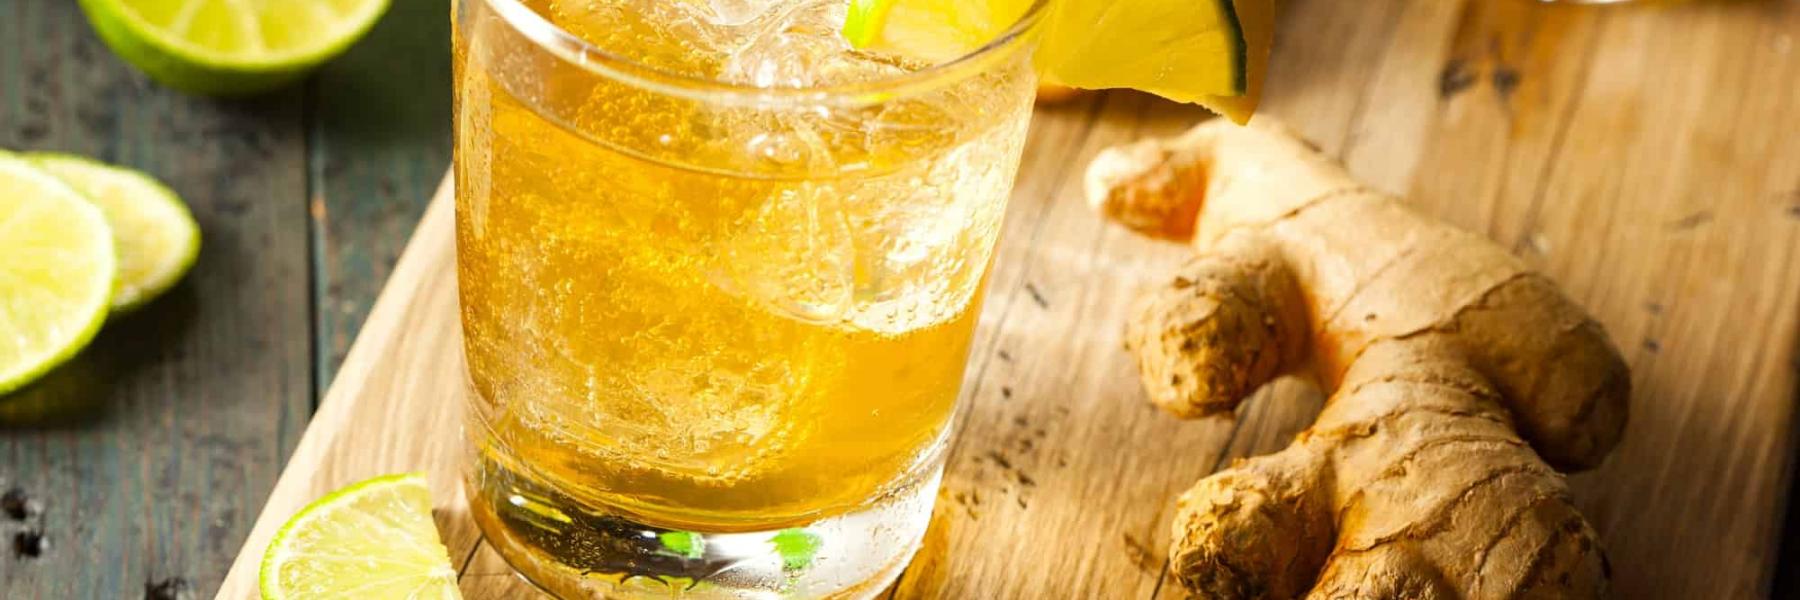 فوائد شاي الزنجبيل مع الليمون وأضرار المبالغة بشربه